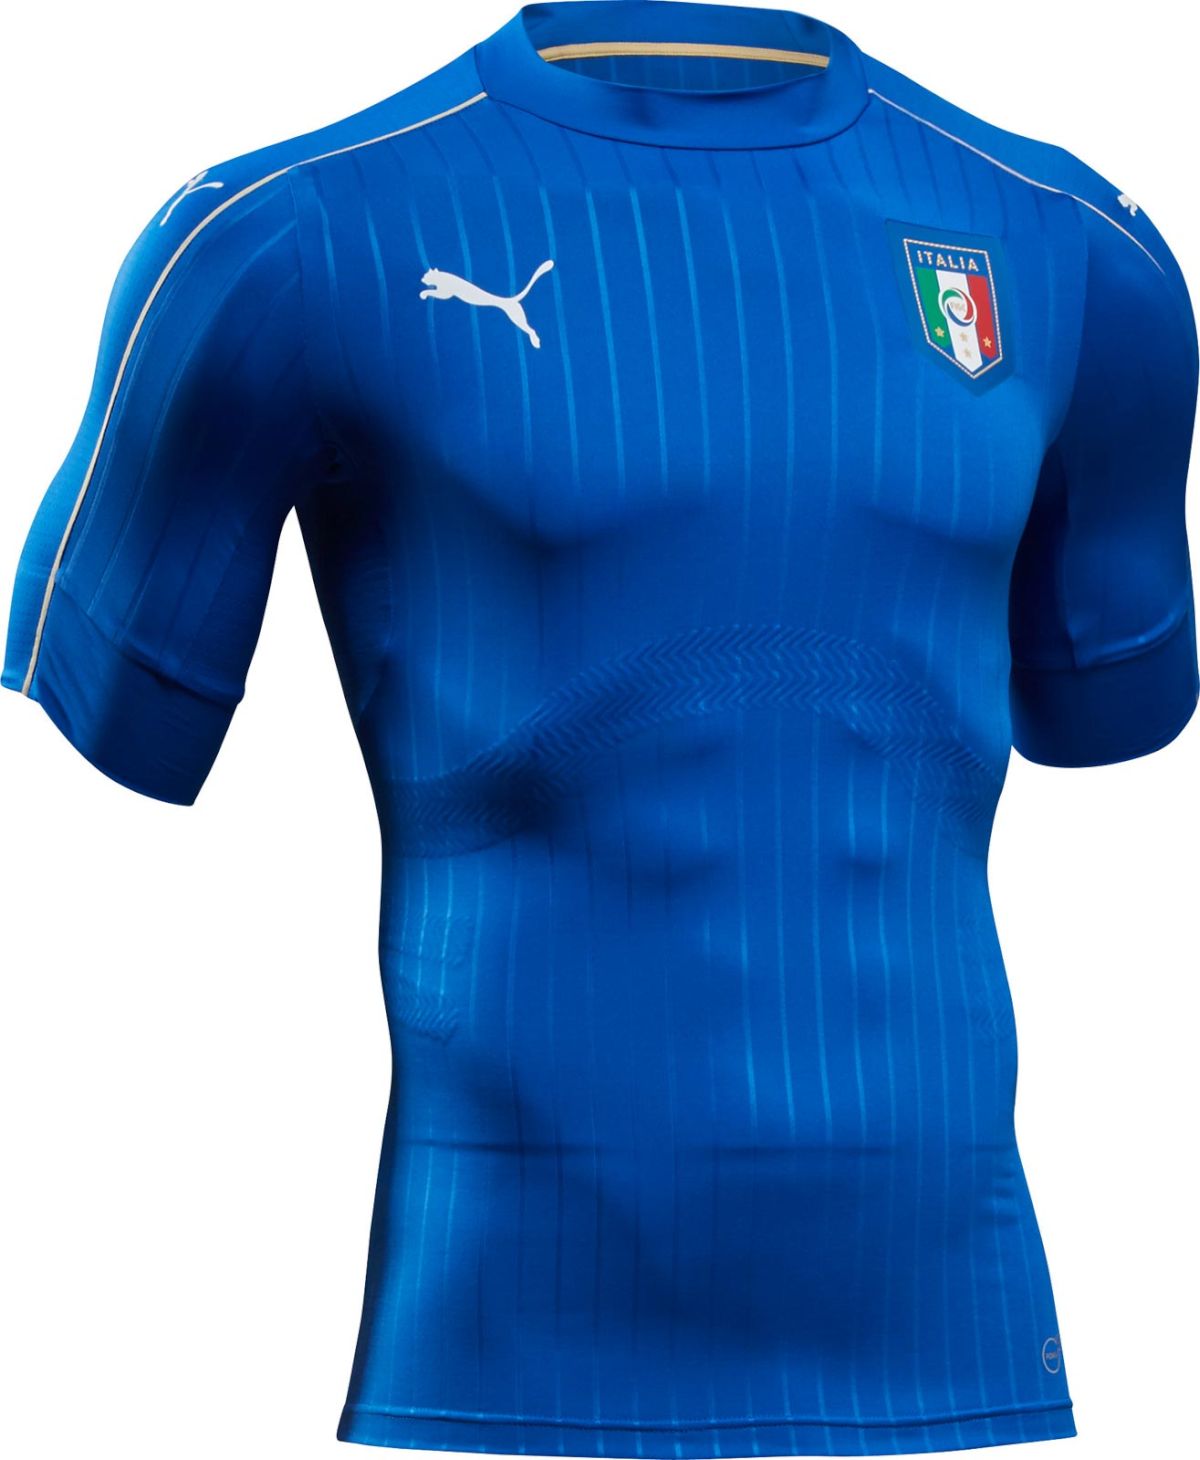 イタリア代表 Euro 16 ユニフォーム ユニ11